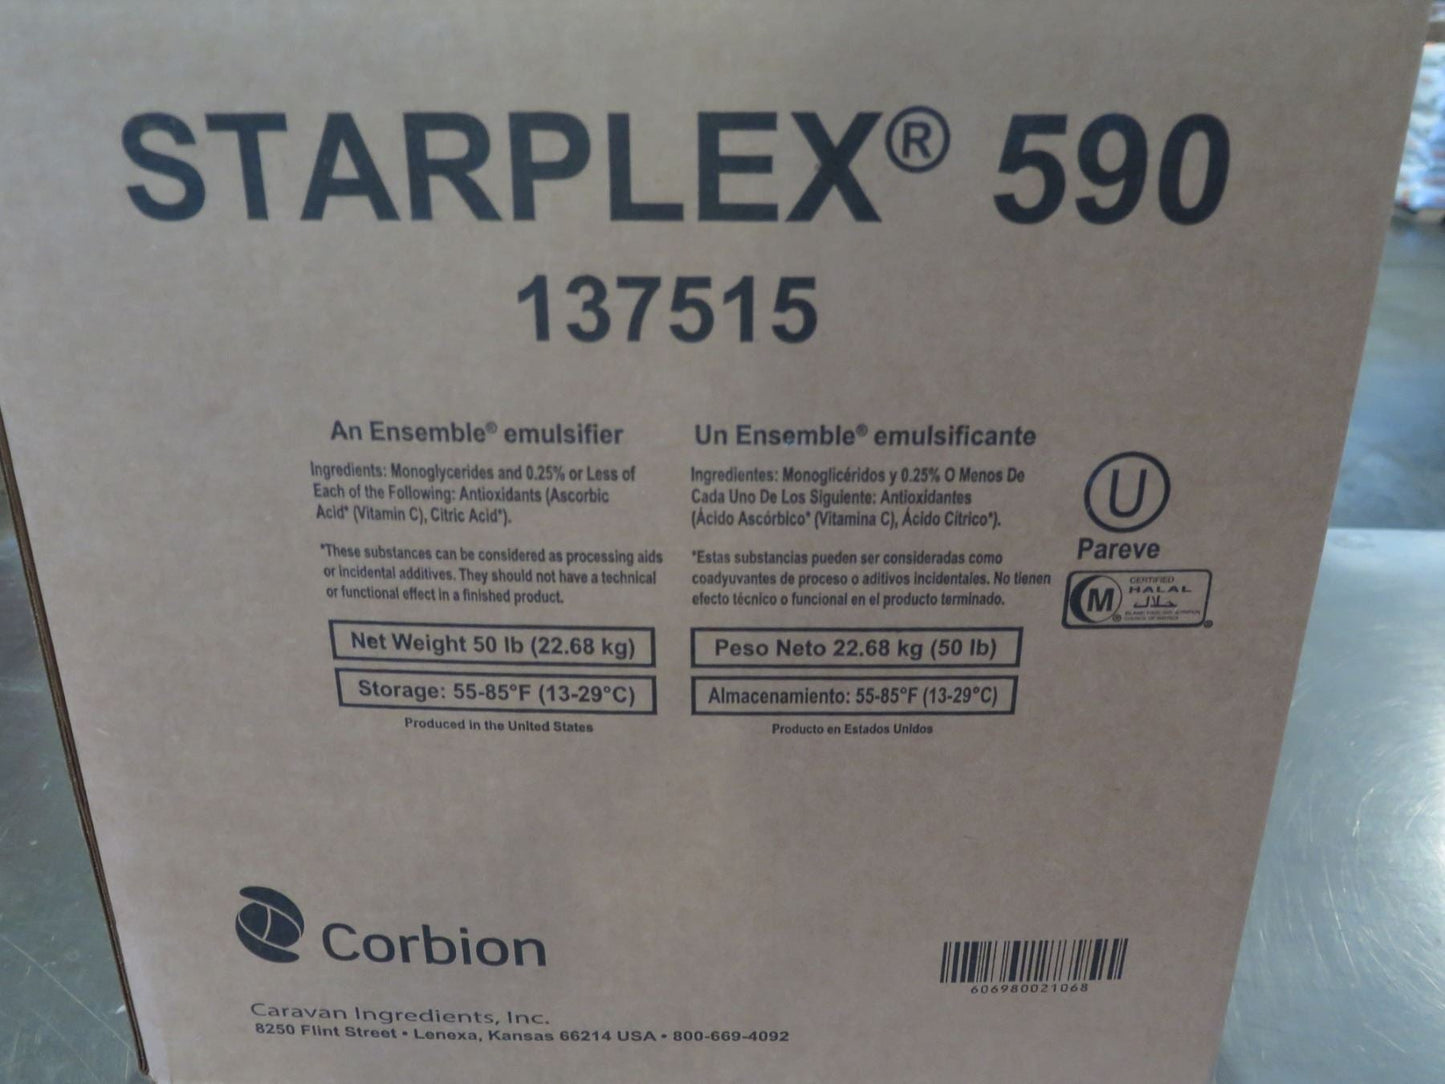 Starplex 590 - An Ensemble Emulsifier 137515